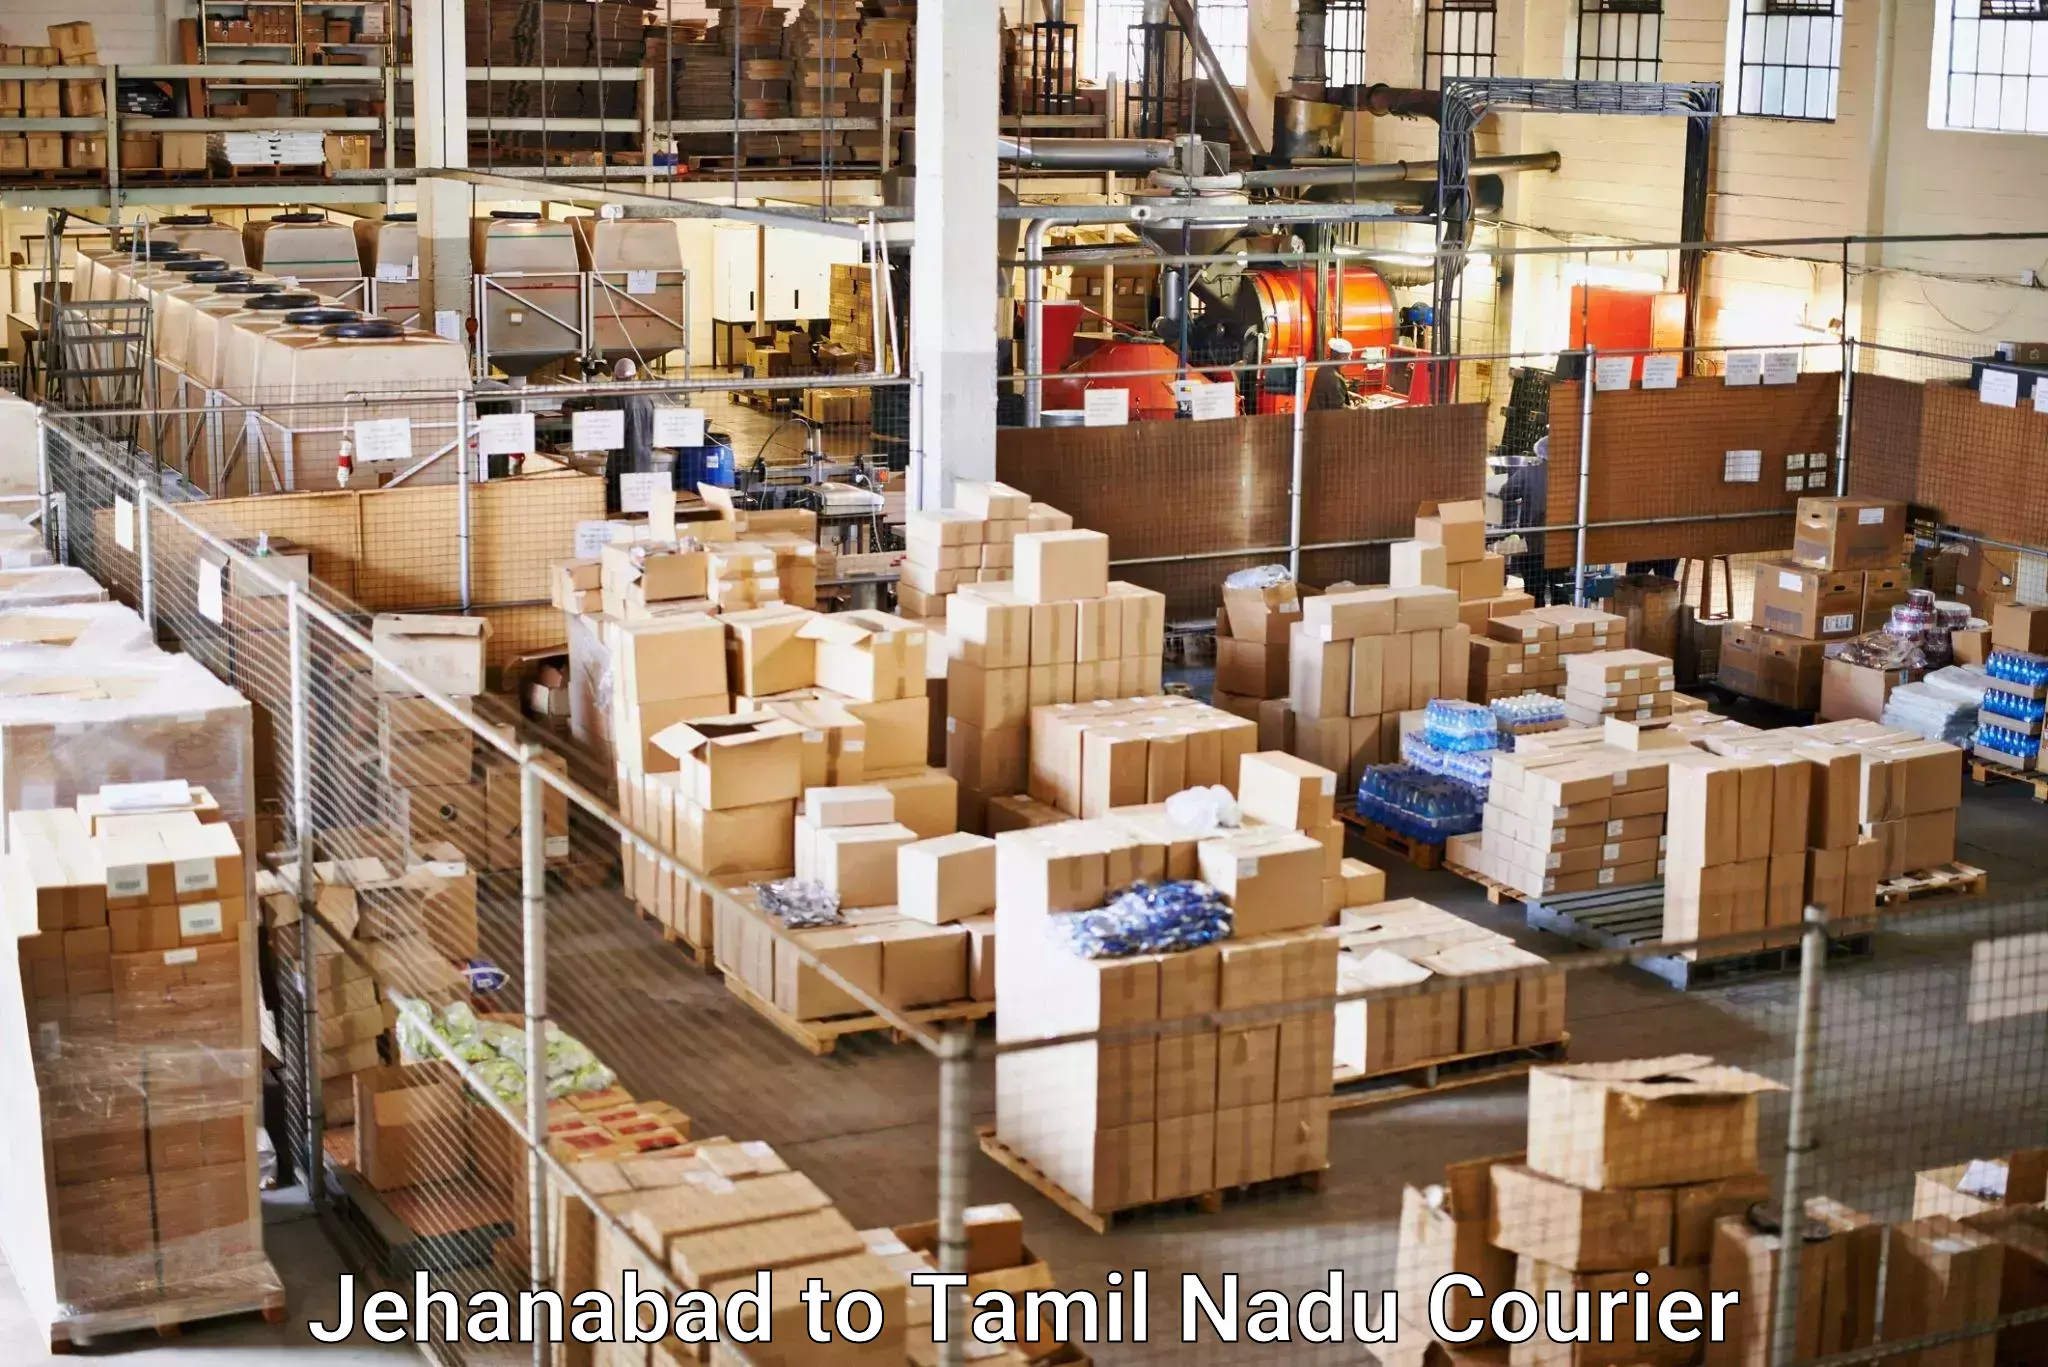 Door-to-door freight service Jehanabad to Tamil Nadu